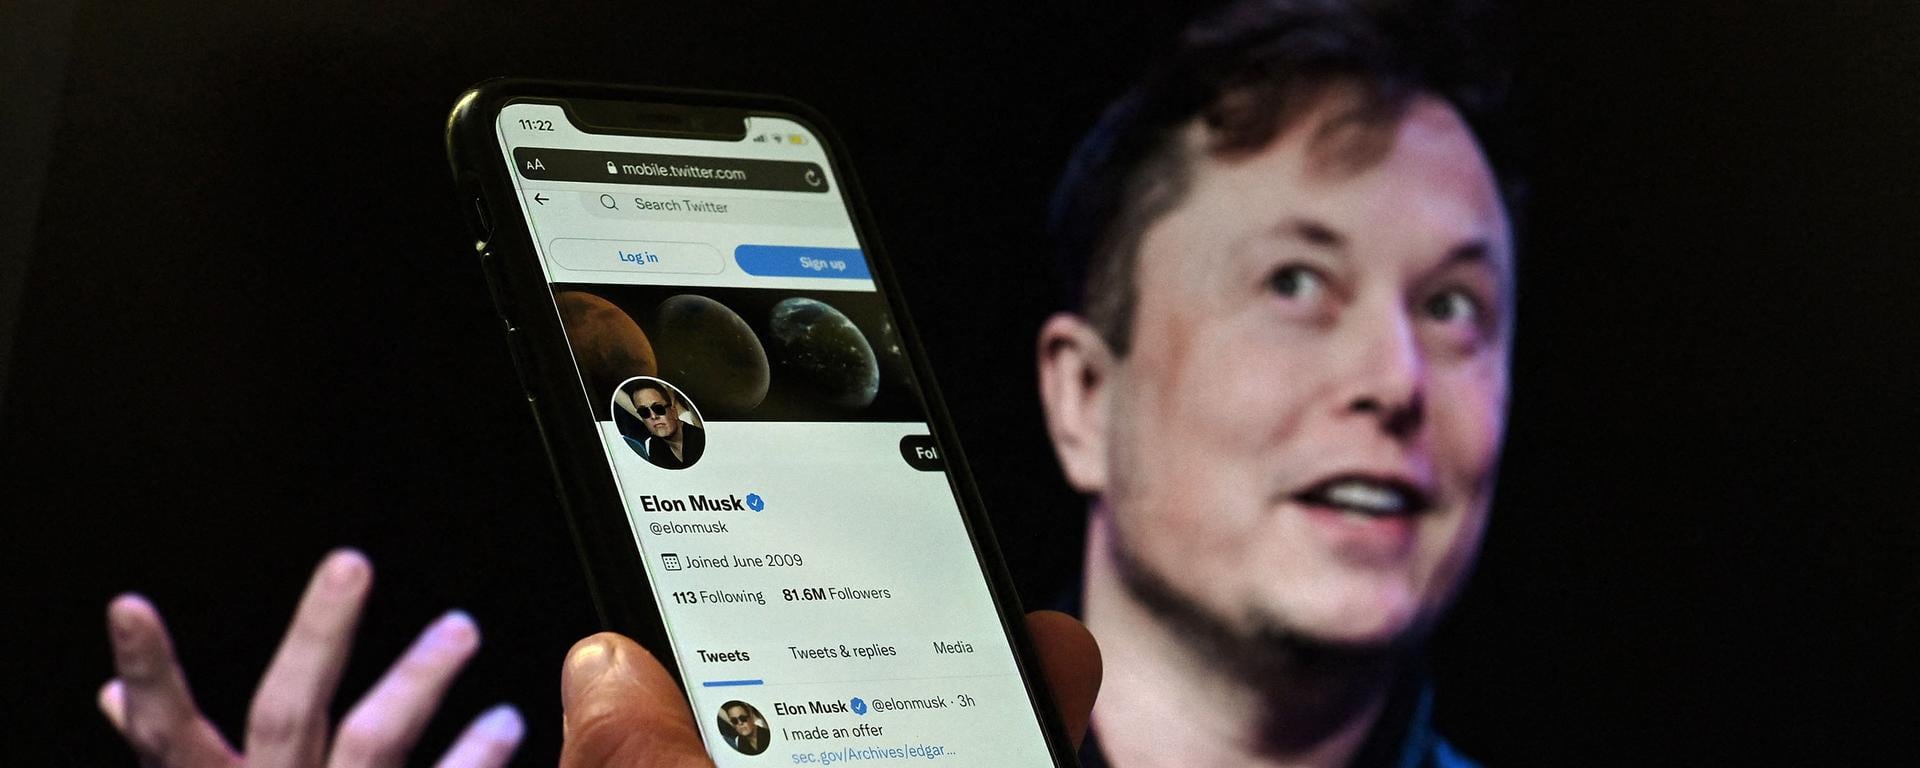 Elon Musk compra Twitter: los cambios que habrá en la aplicación tras la compra del multimillonario